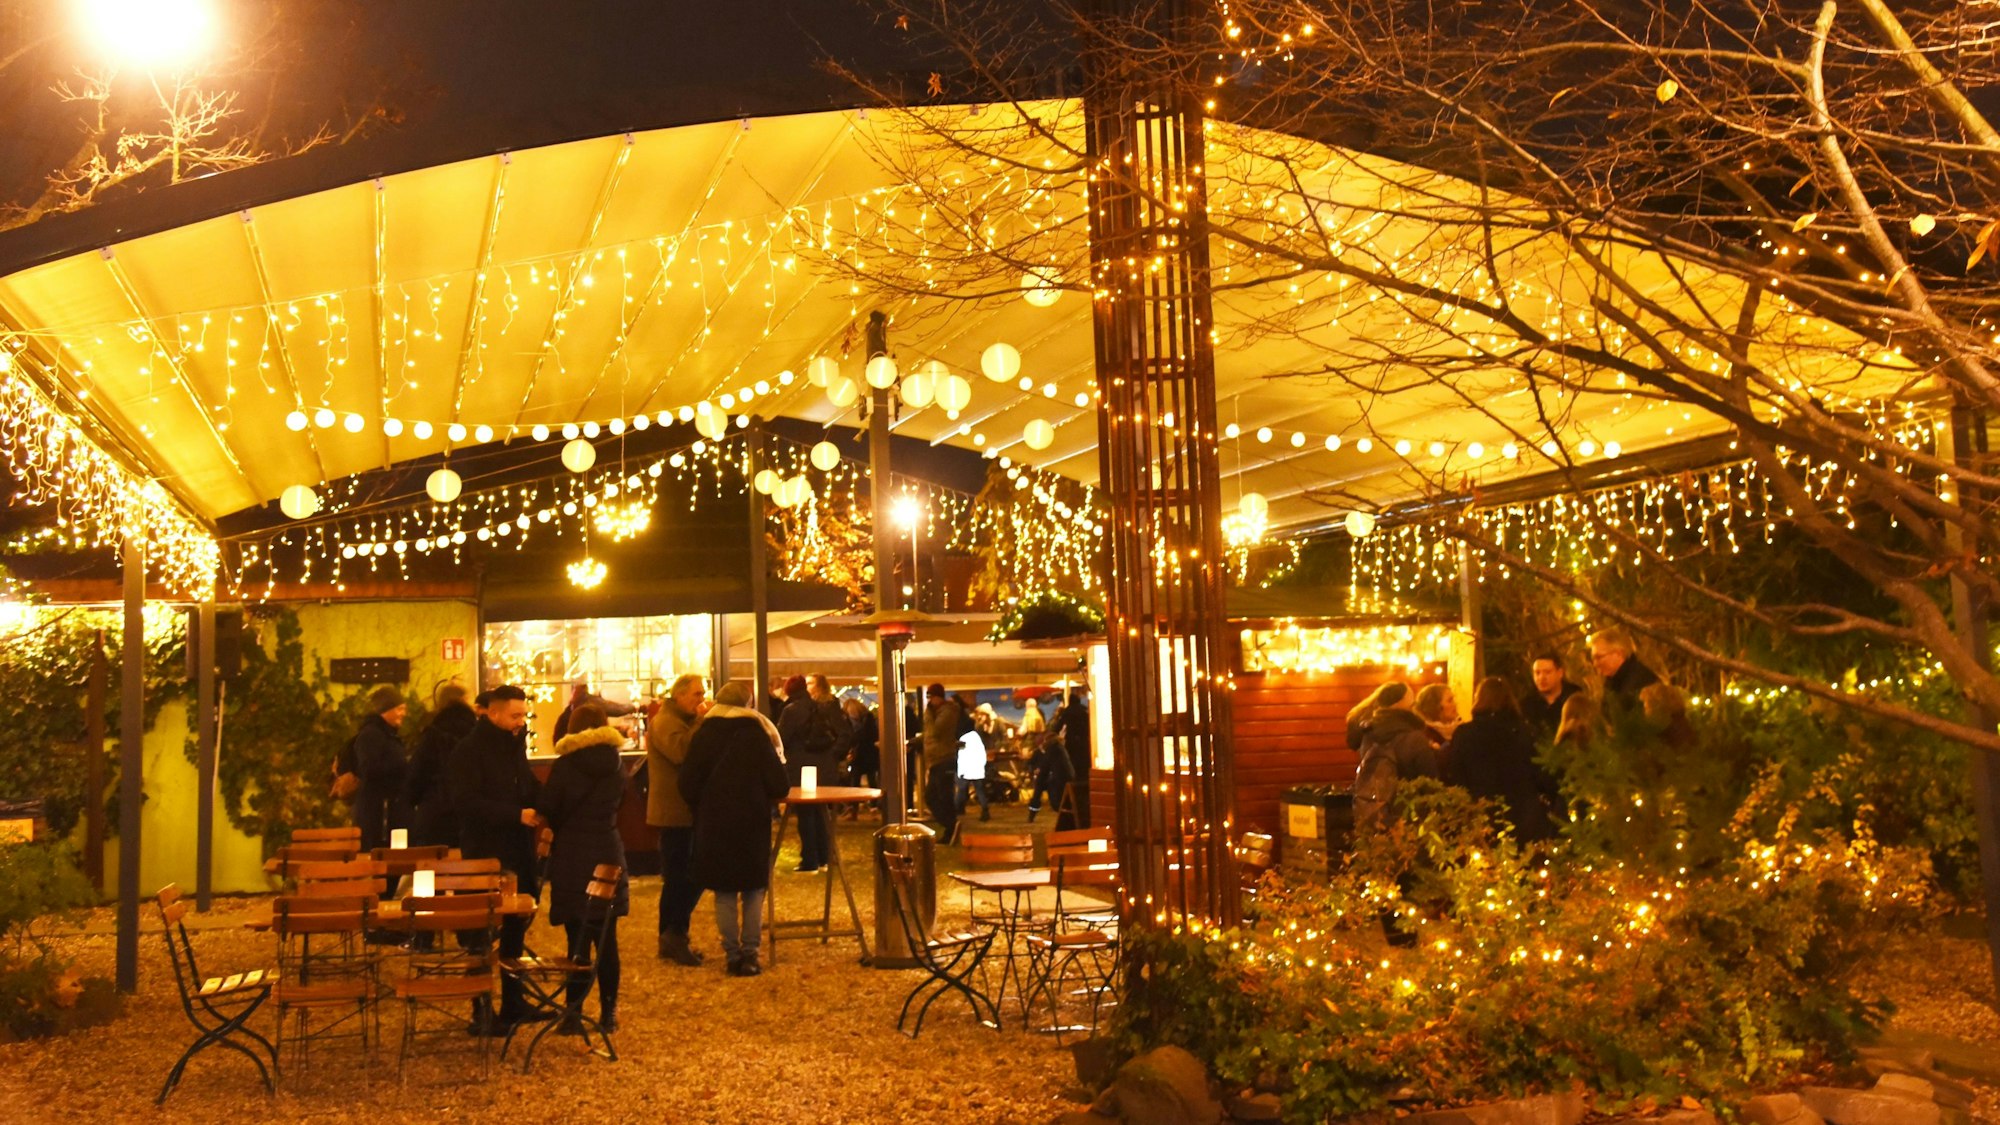 Innenhof geschmückt als kleiner Weihnachtsmarkt mit vielen Lichtern